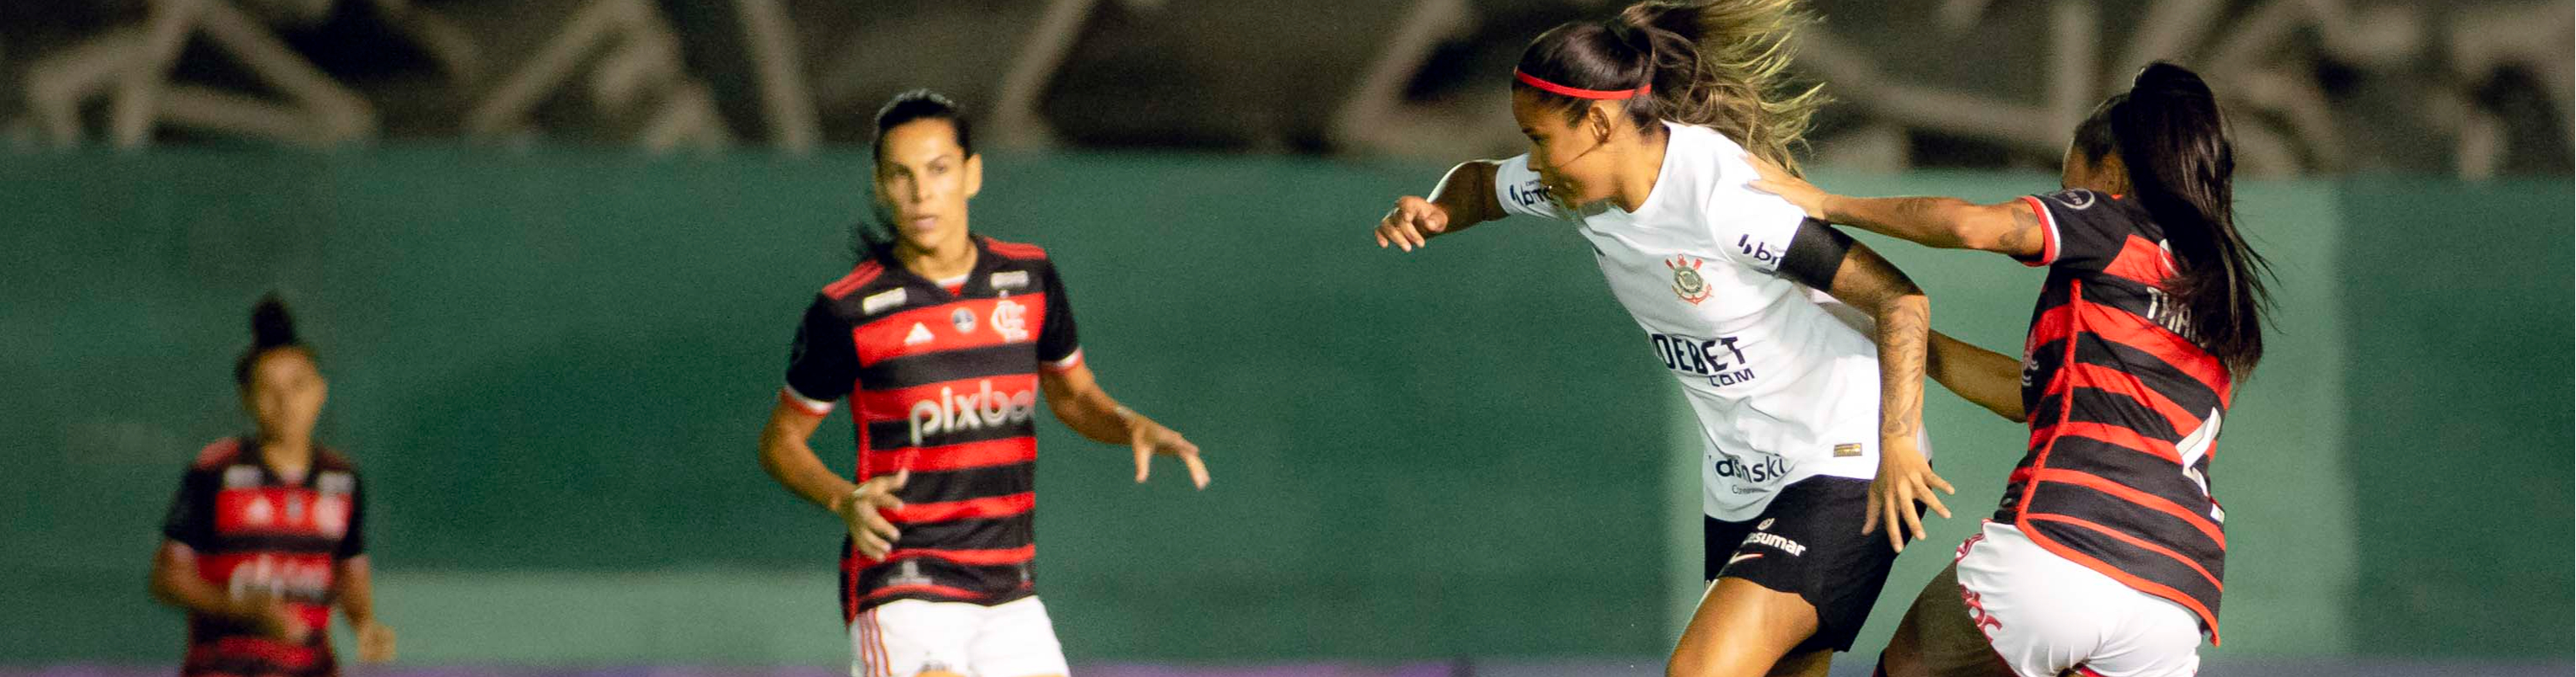 Futebol feminino: Corinthians domina o Flamengo, vence de virada e segue líder do BR